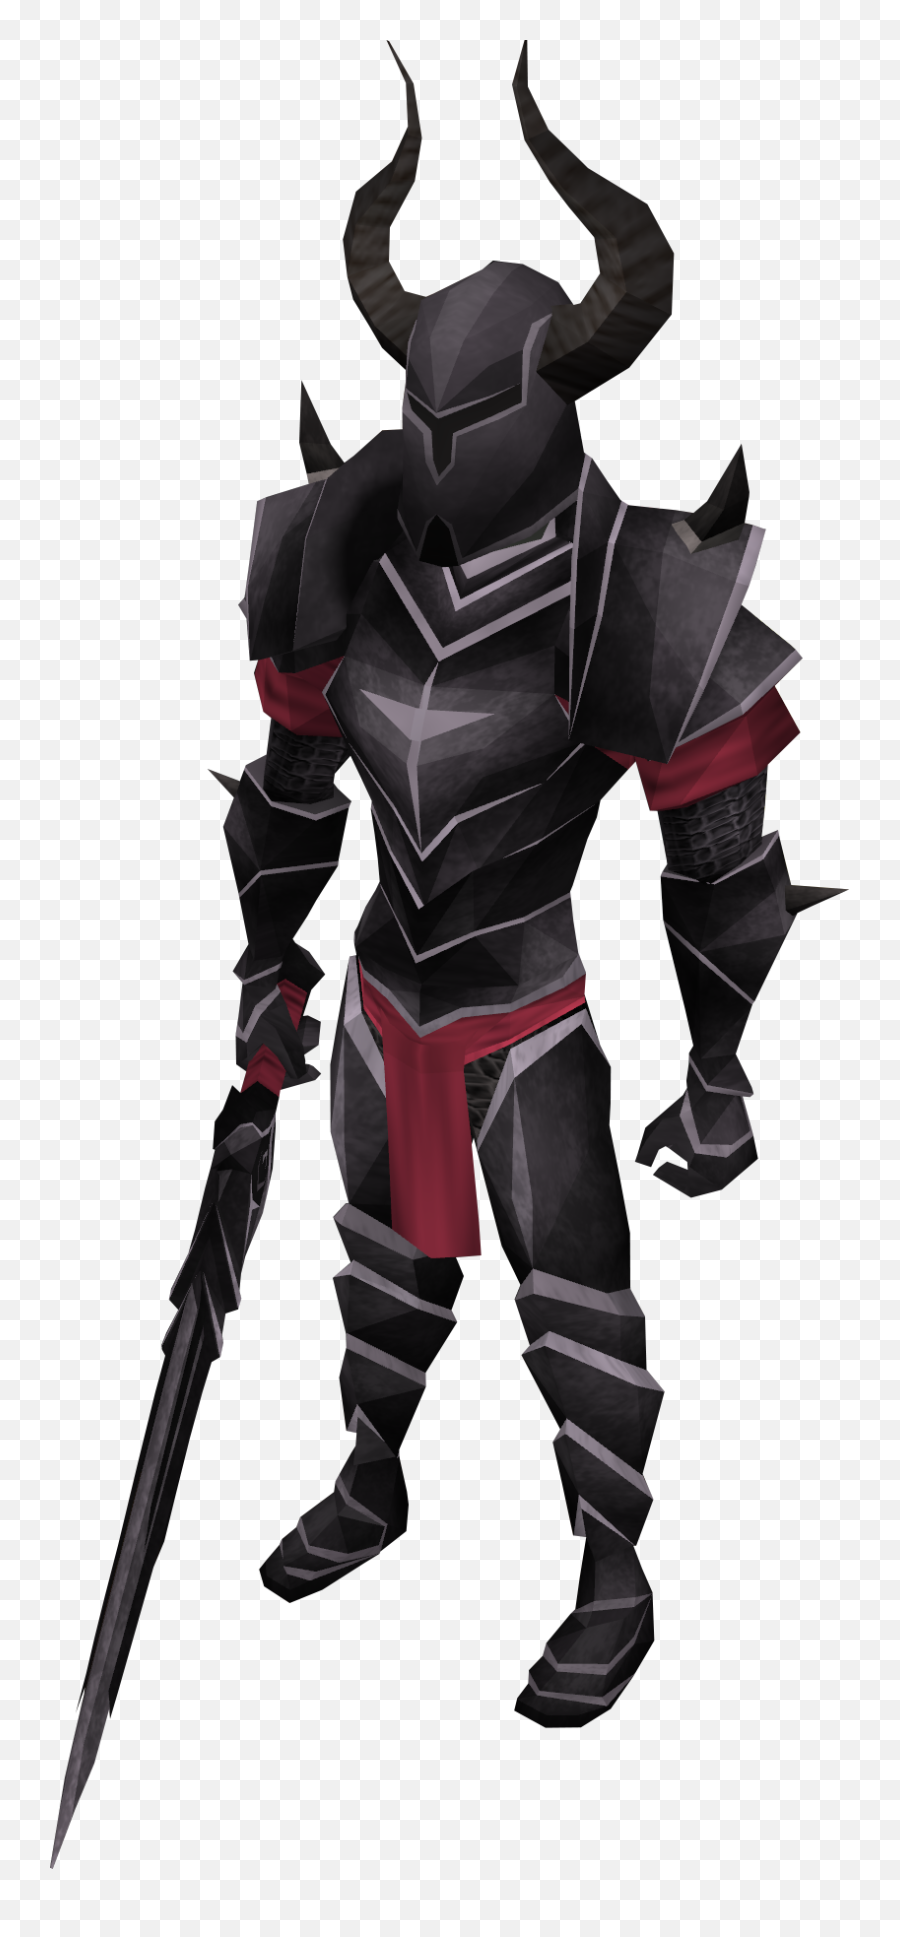 Black Knight - Demon Emoji,Knight Png